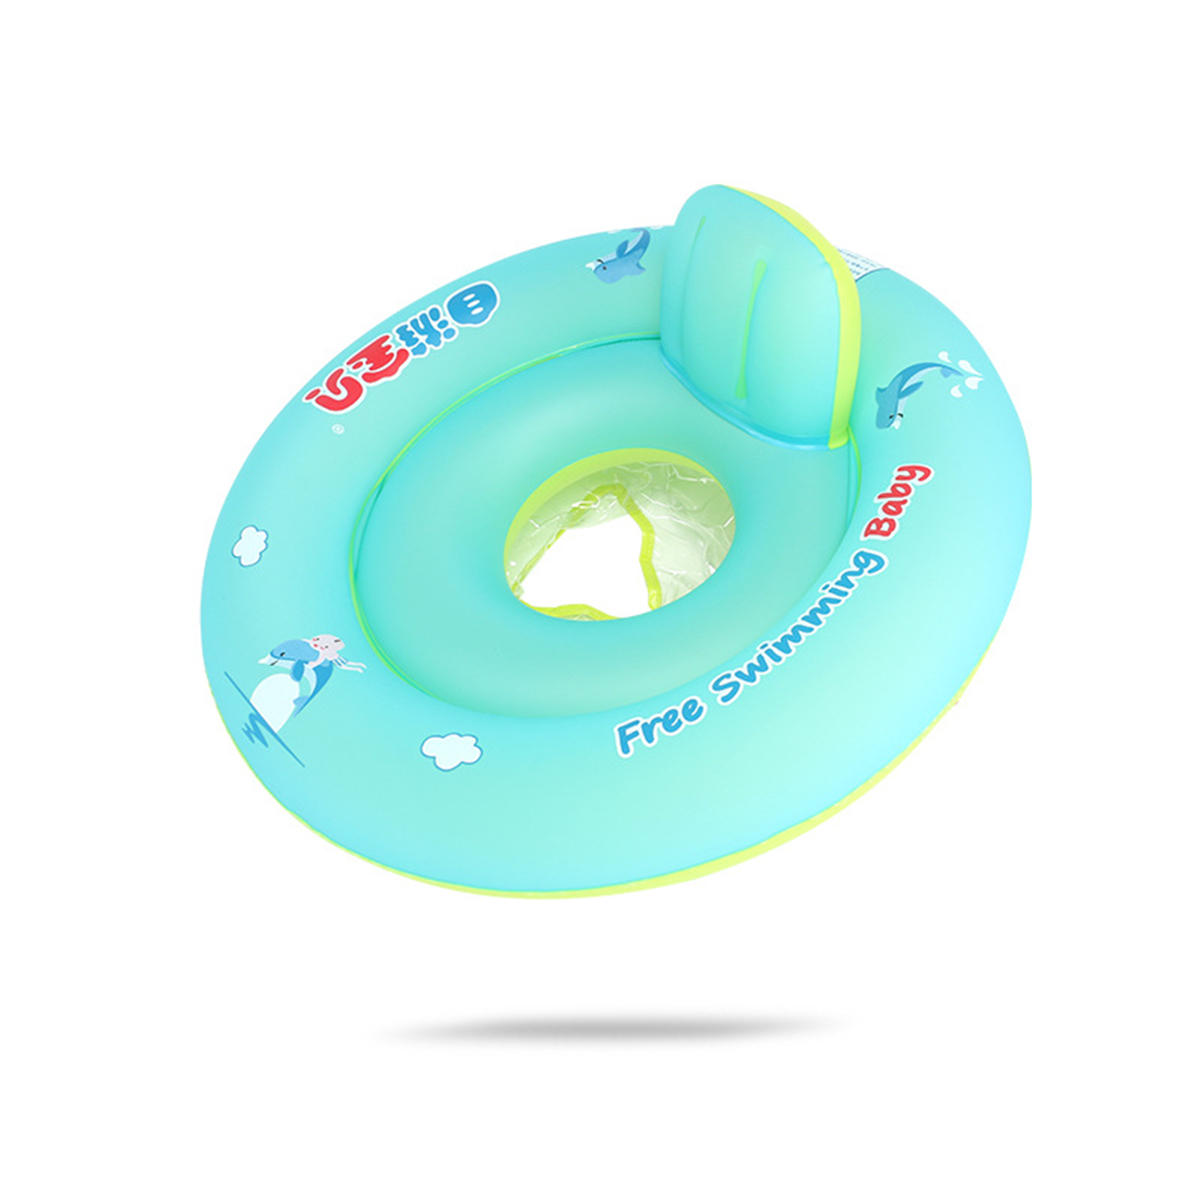 Baby-Schwimmen-Schwimmen-Ring-Kind-aufblasbarer Strand Tube Pool-Wasser-Spaß-Spielzeug S / M / L